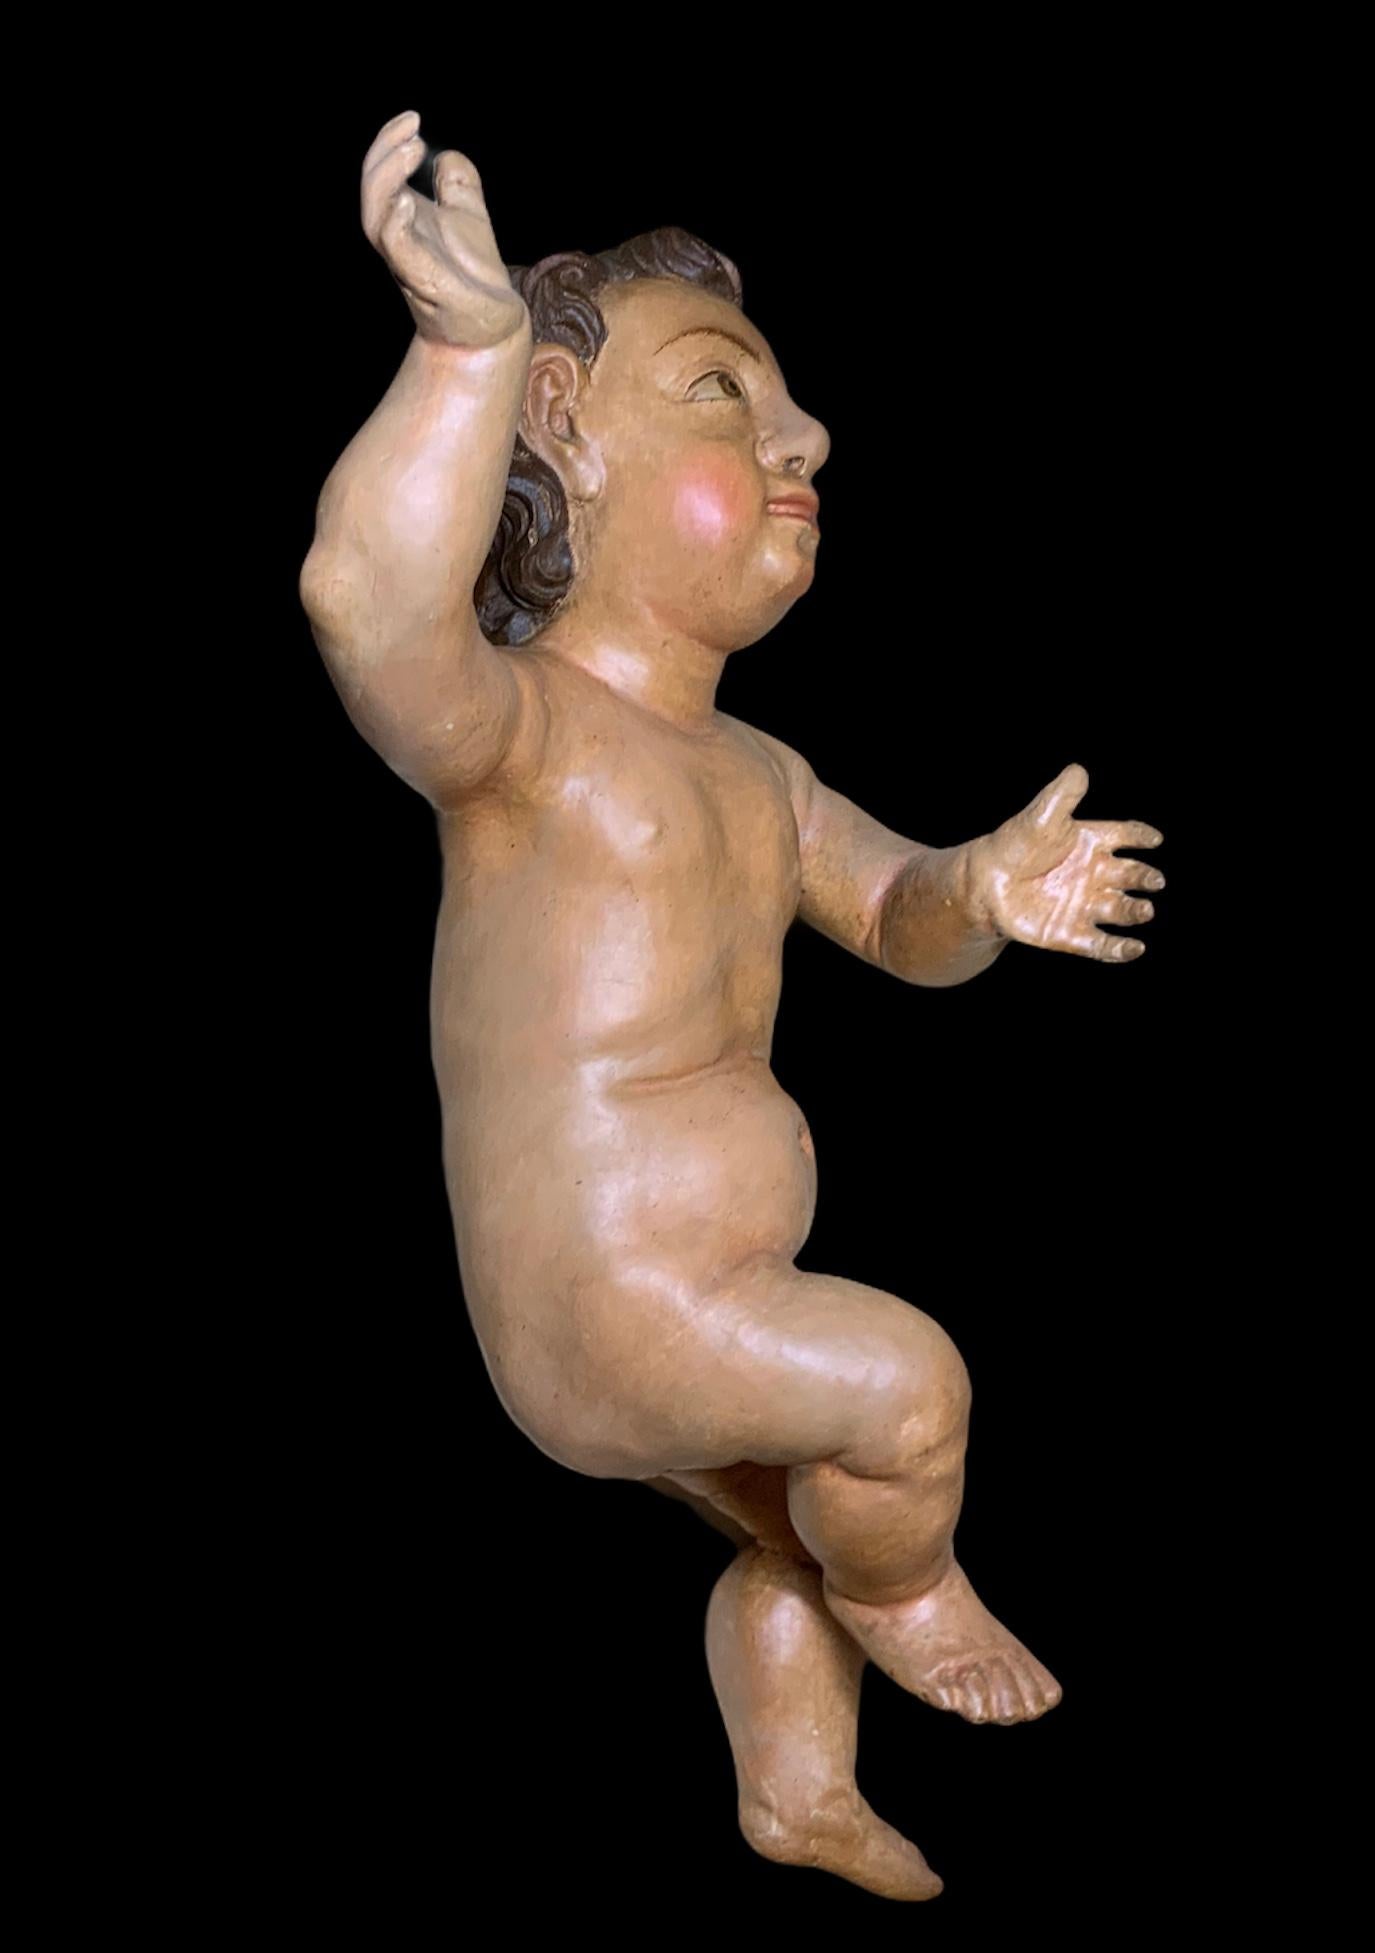 Dies ist ein altes großes spanisches handbemalt und geschnitzt Holz nackt Baby Jesus. Er hat handgemalte große, ausdrucksstarke Augen und Augenbrauen. Sein üppiges Haar ist braun und lockig. Seine rechte Hand ist in segnender Haltung erhoben, die